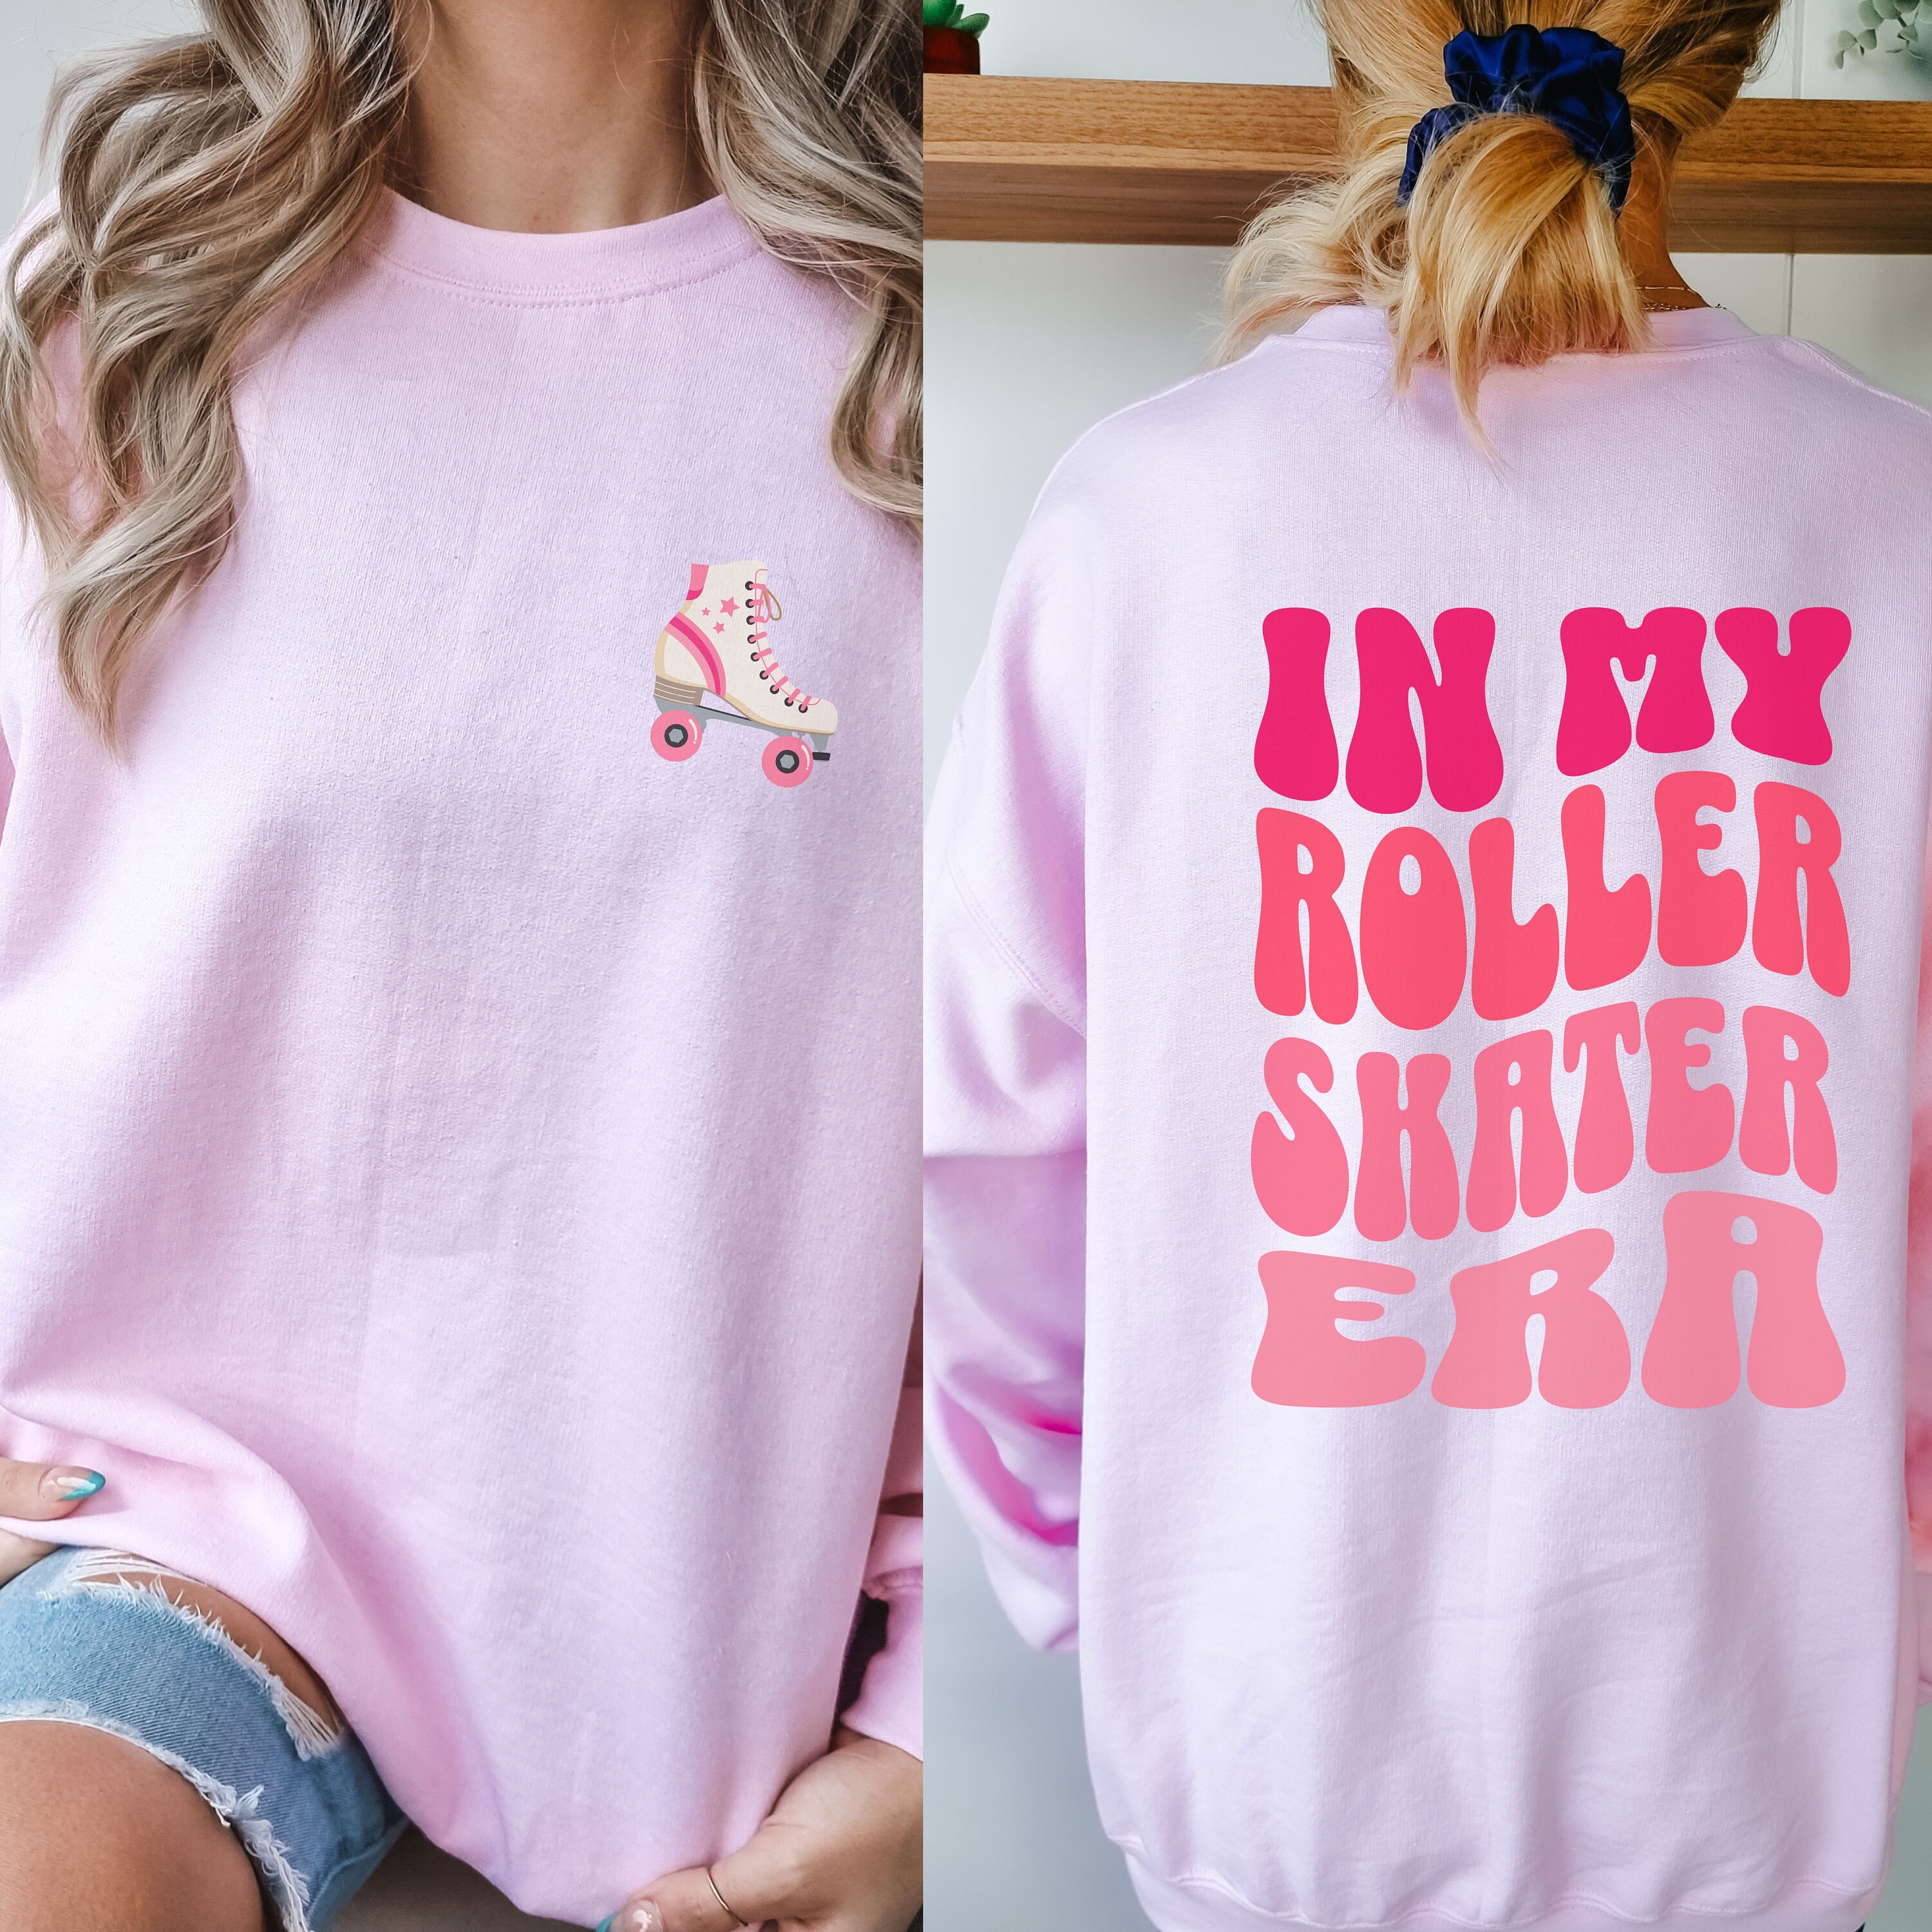 Épinglé sur 70s RollerGirl 🛼 Rollerskating! to Present